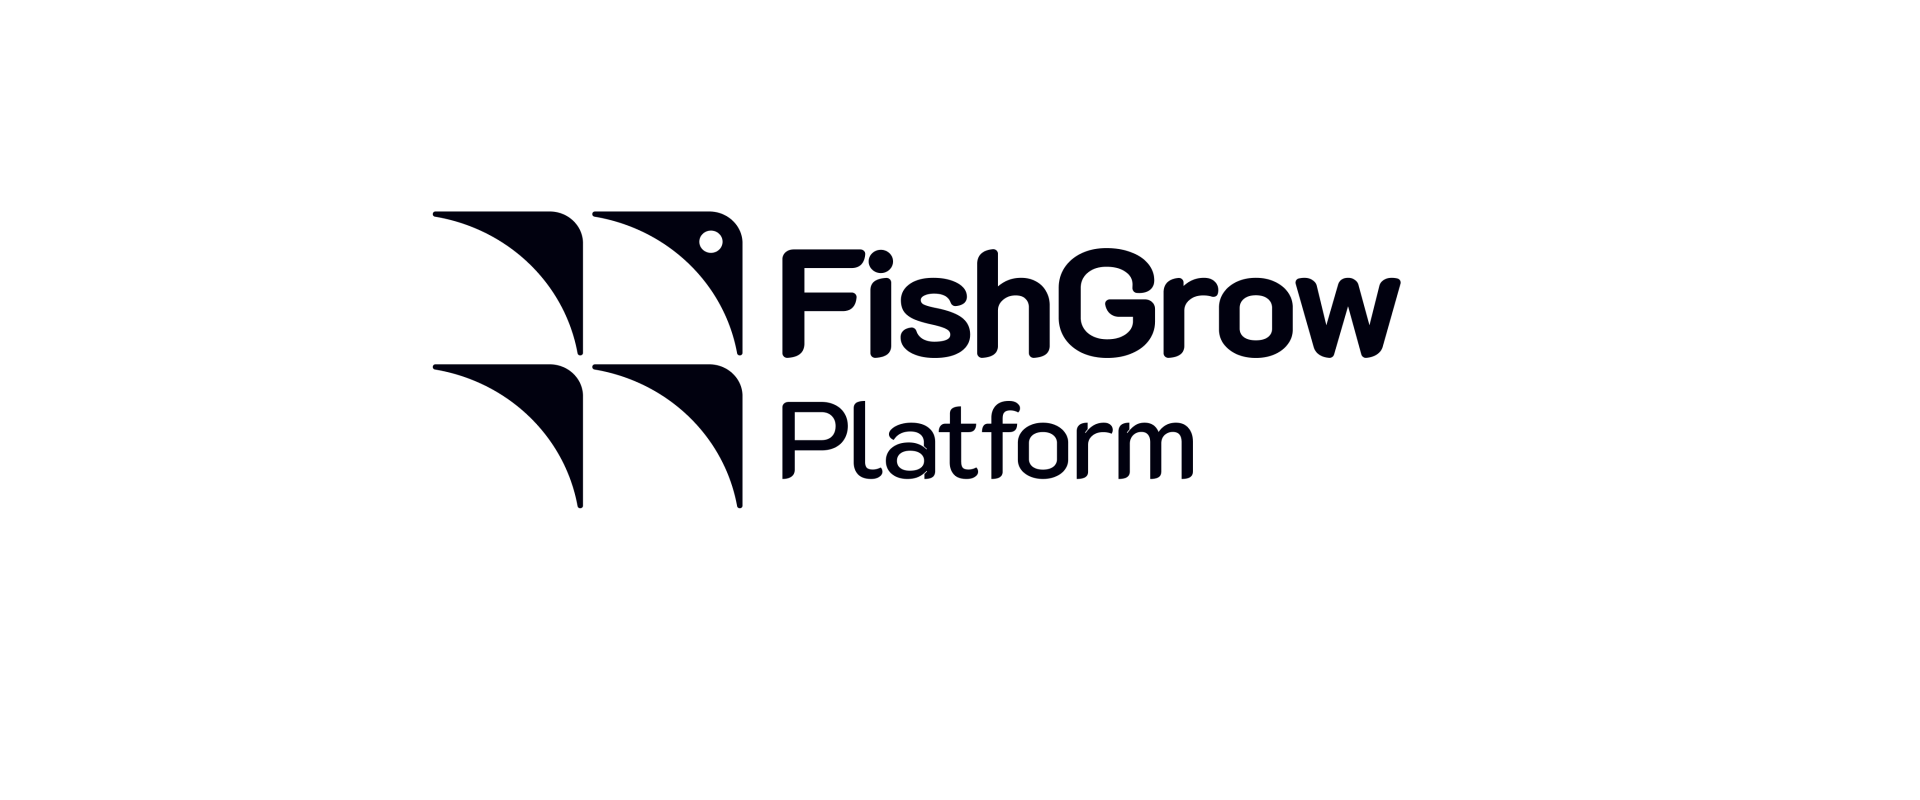 Система FishGrow Platform включена в реестр отечественного ПО